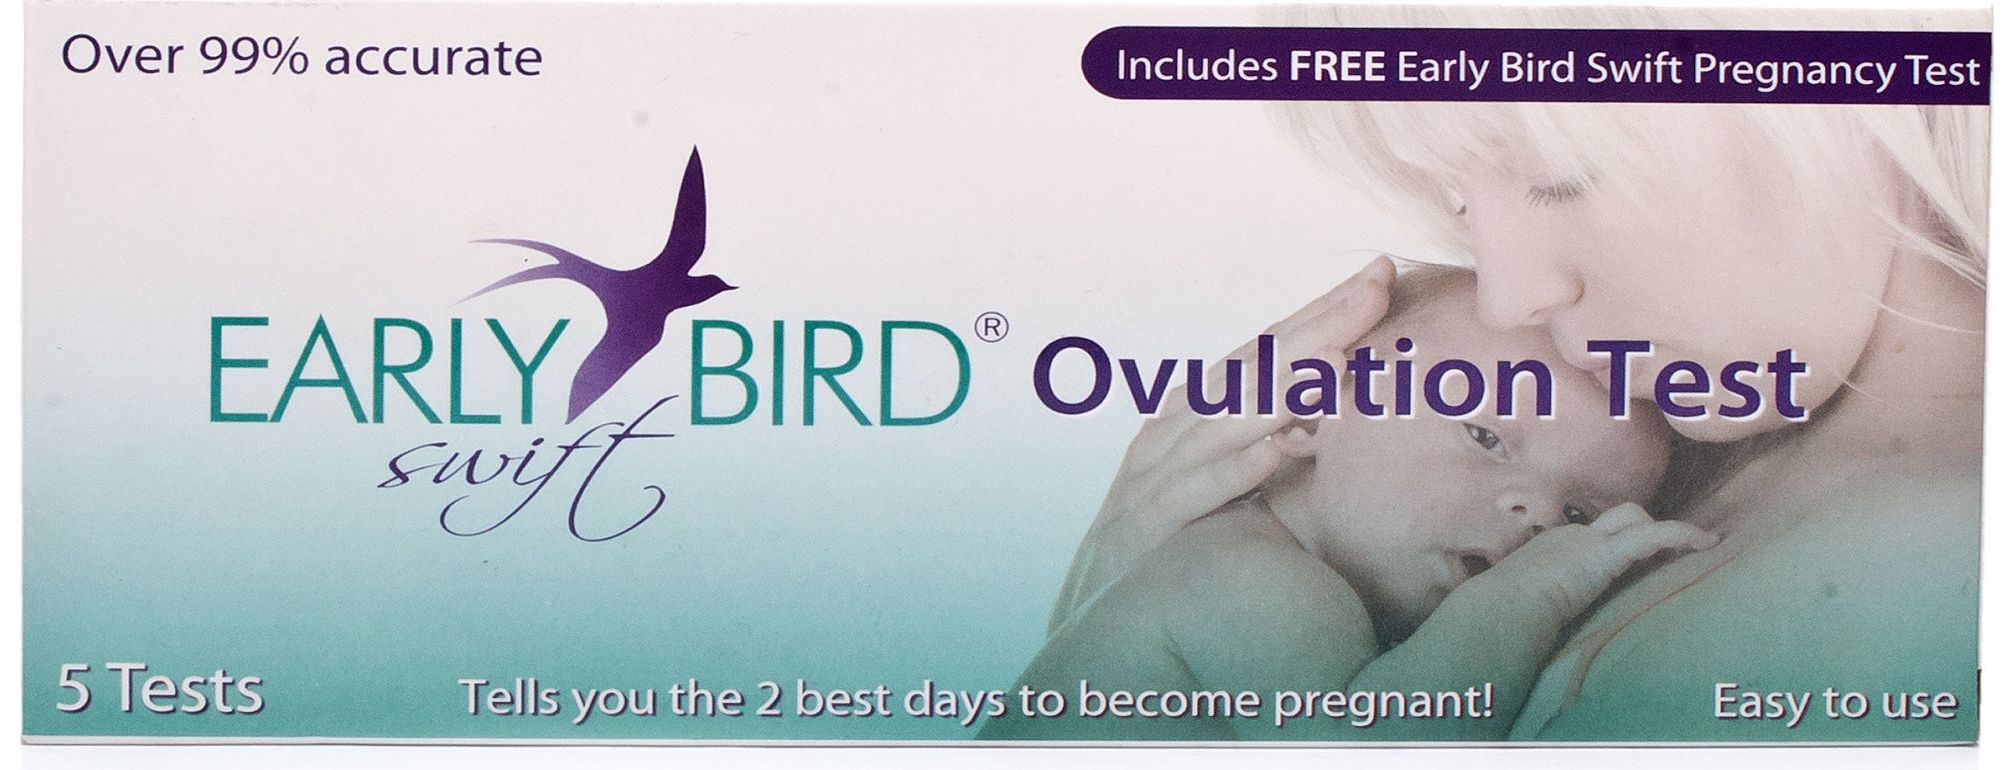 Bird Swift Ovulation Kit